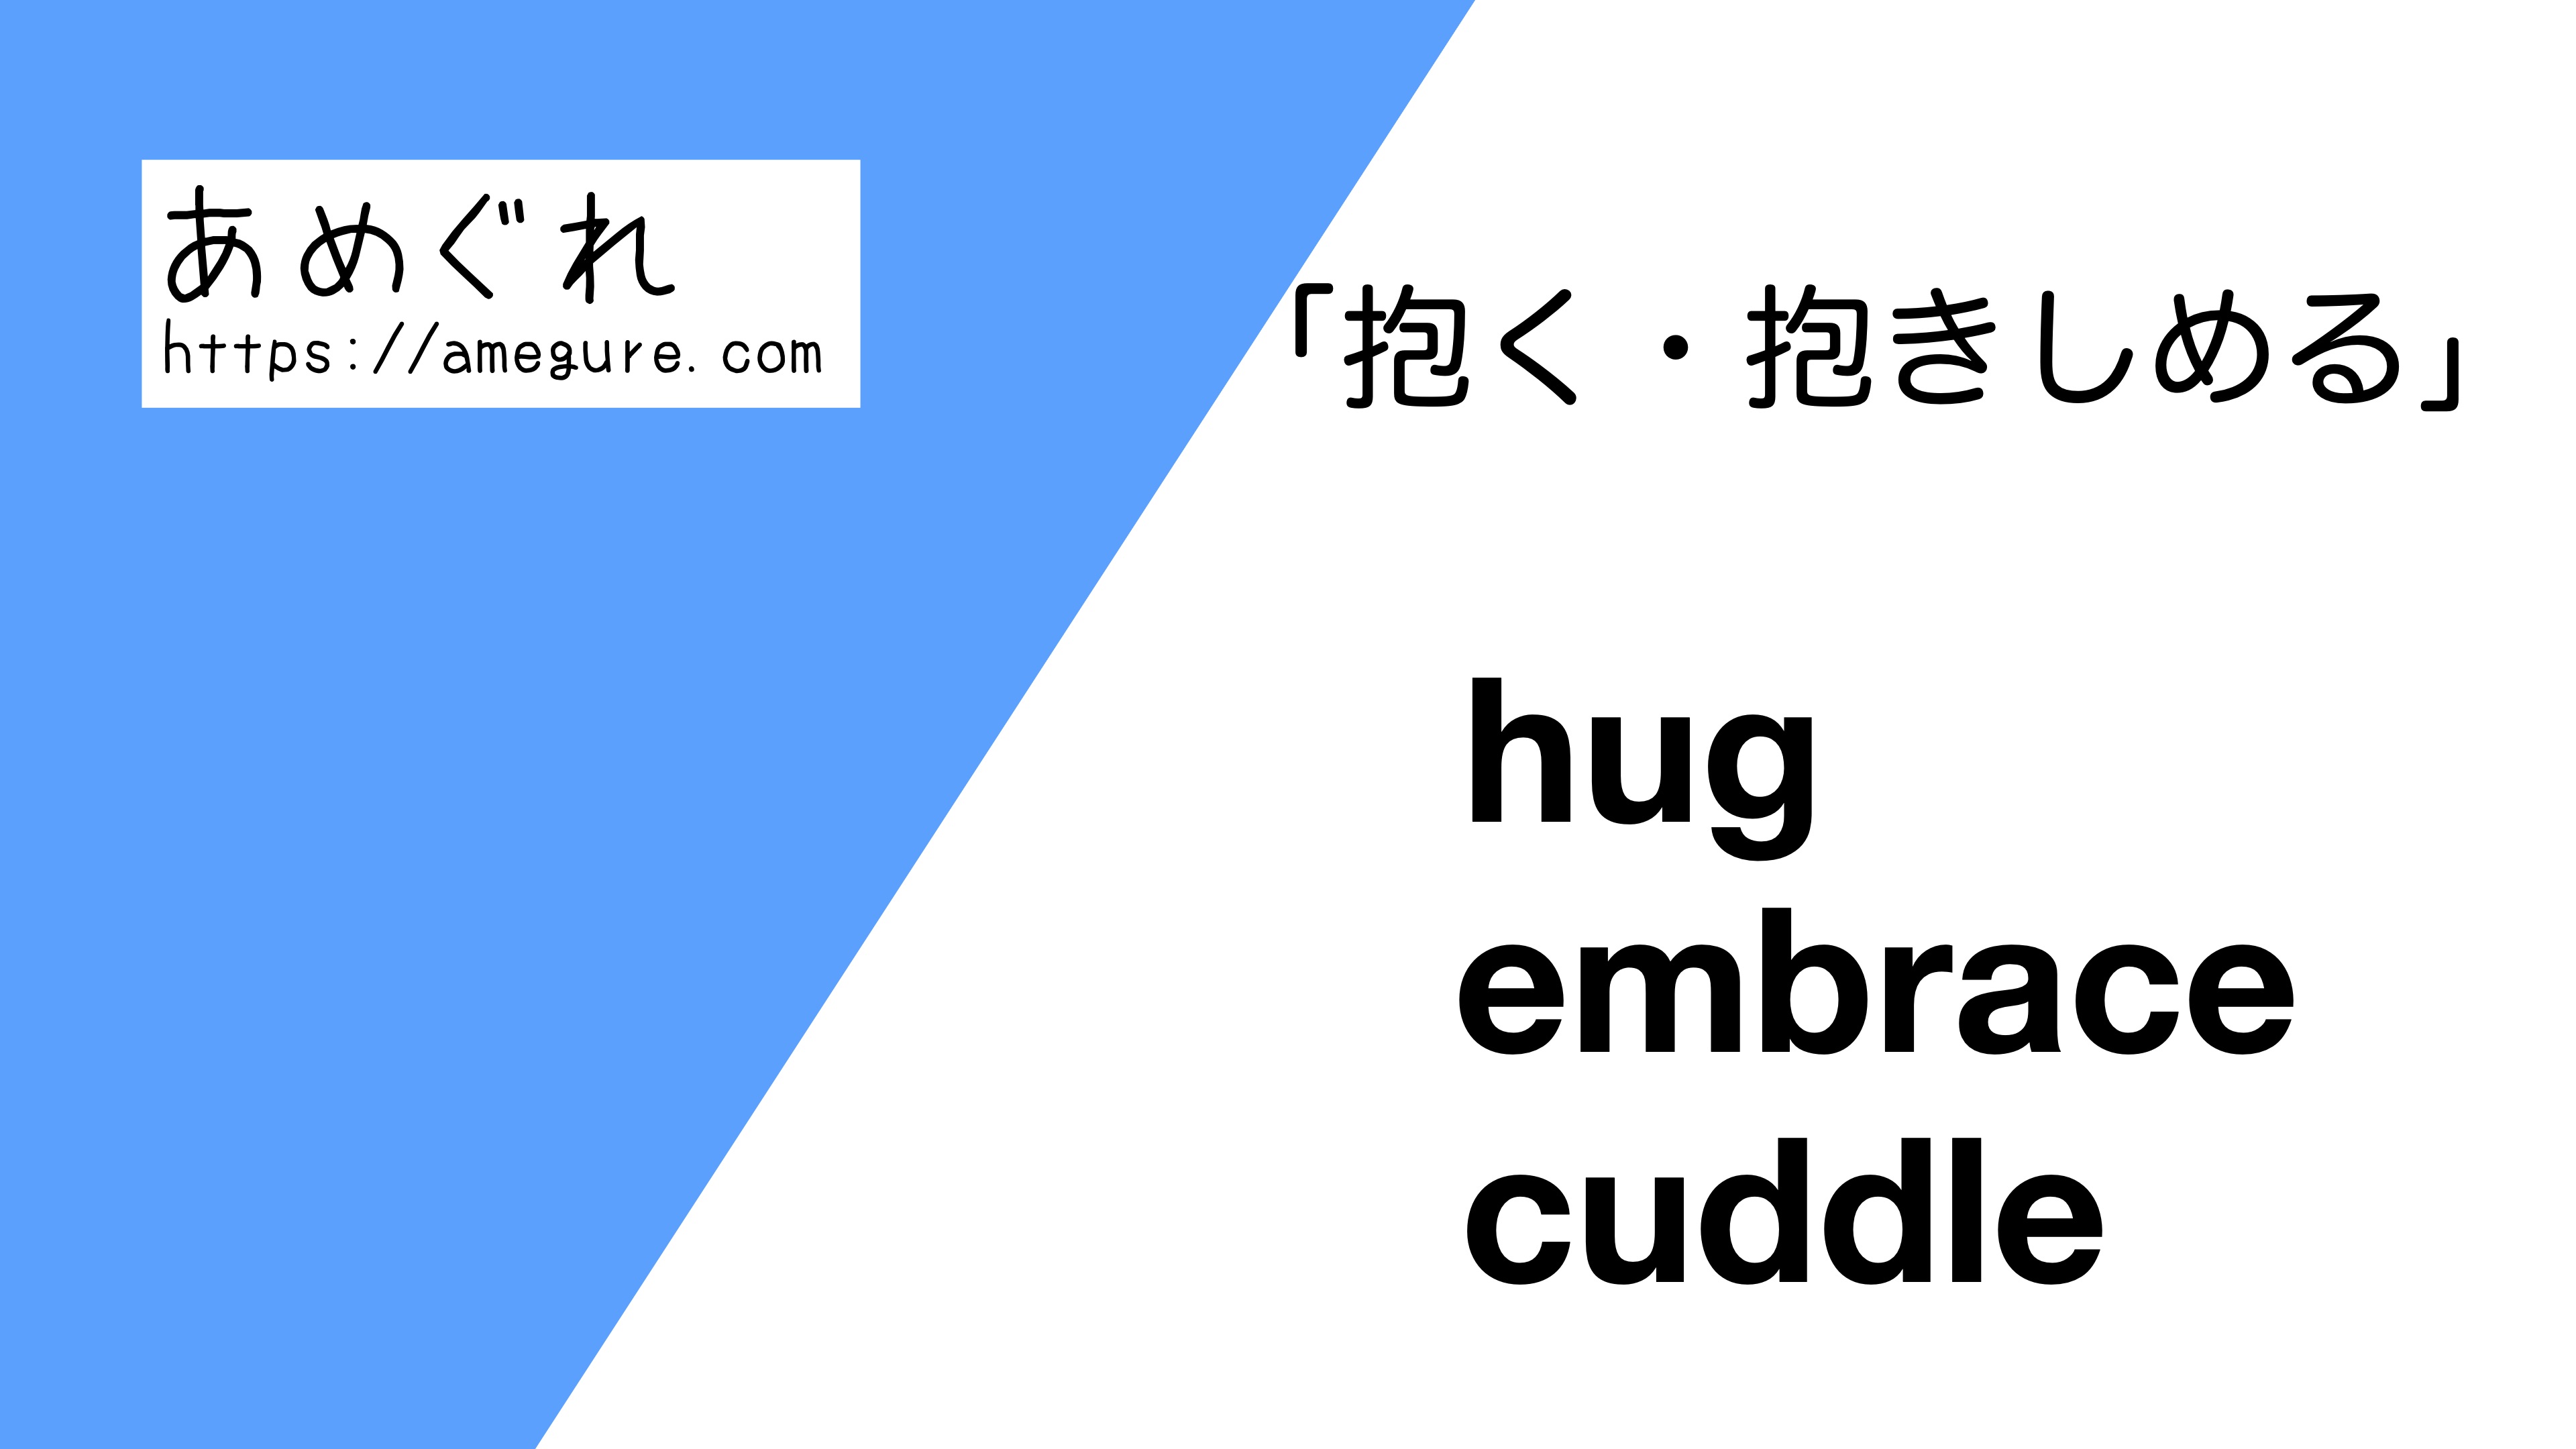 英語 Hug Embrace Cuddle 抱く 抱きしめる の意味の違いと使い分け